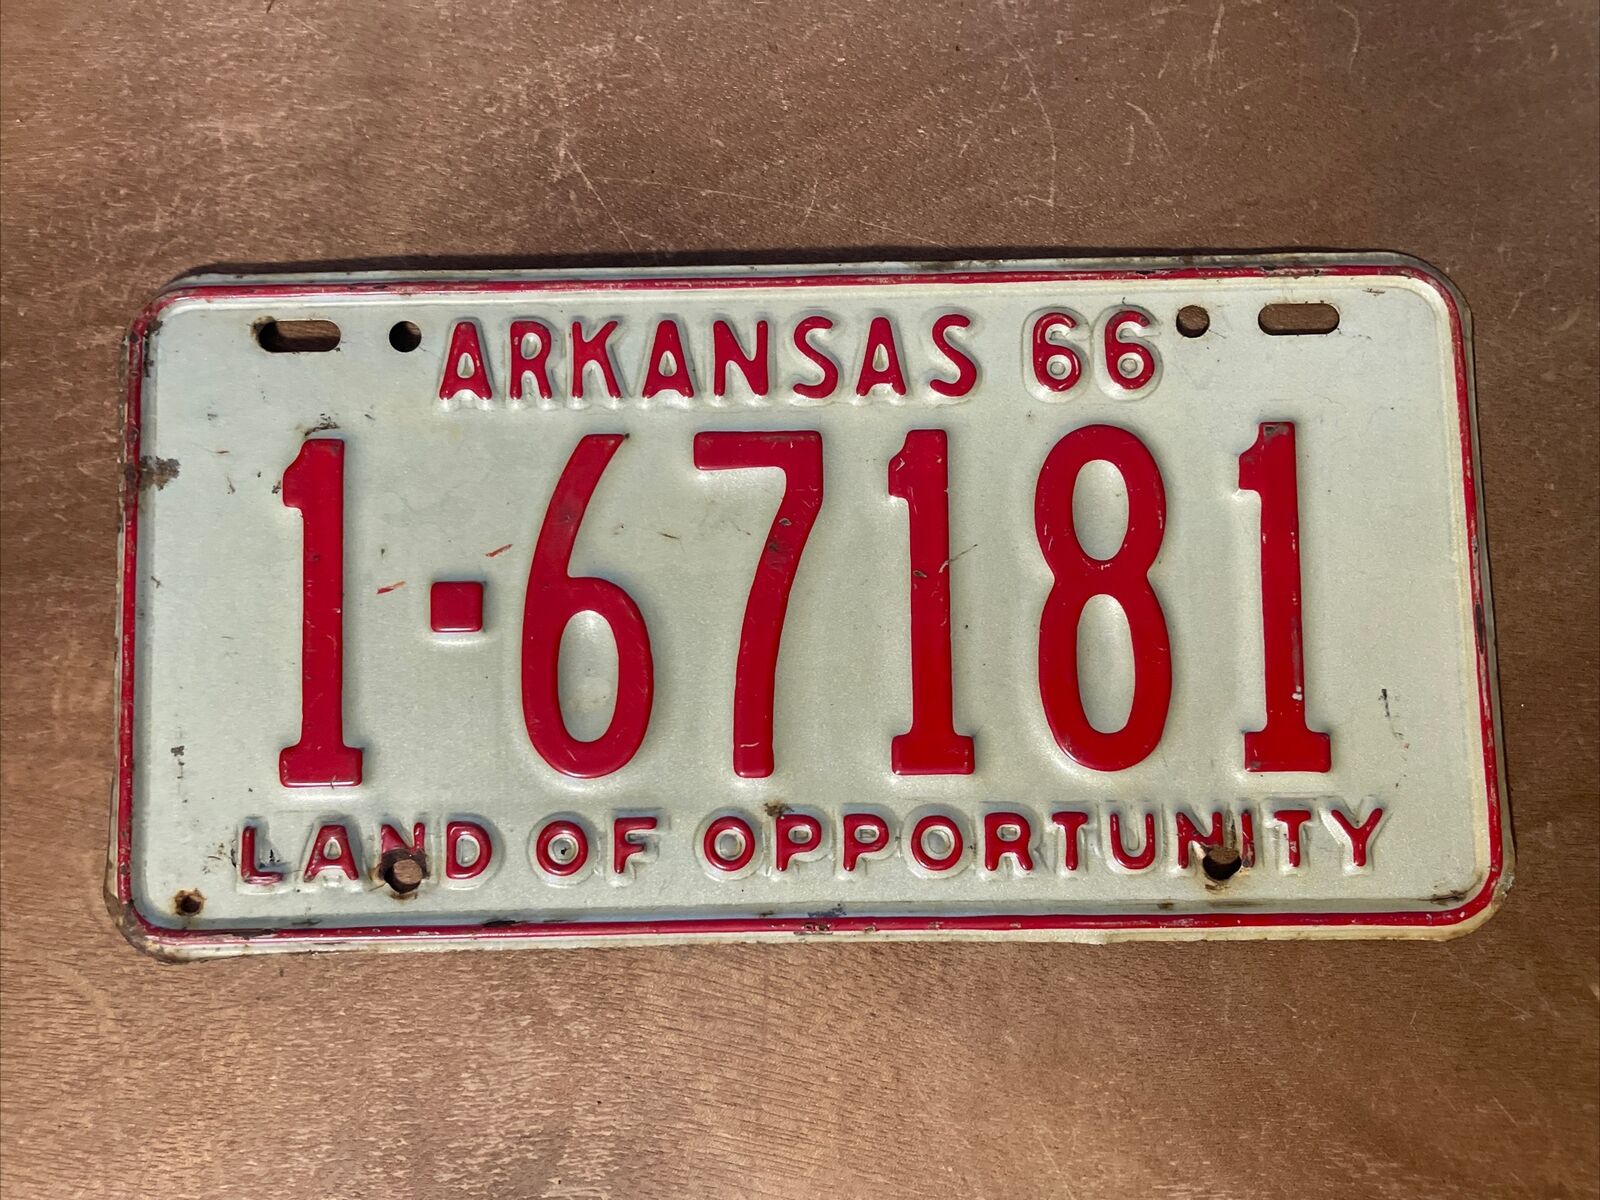 1966 Arkansas License Plate # 1- 67181